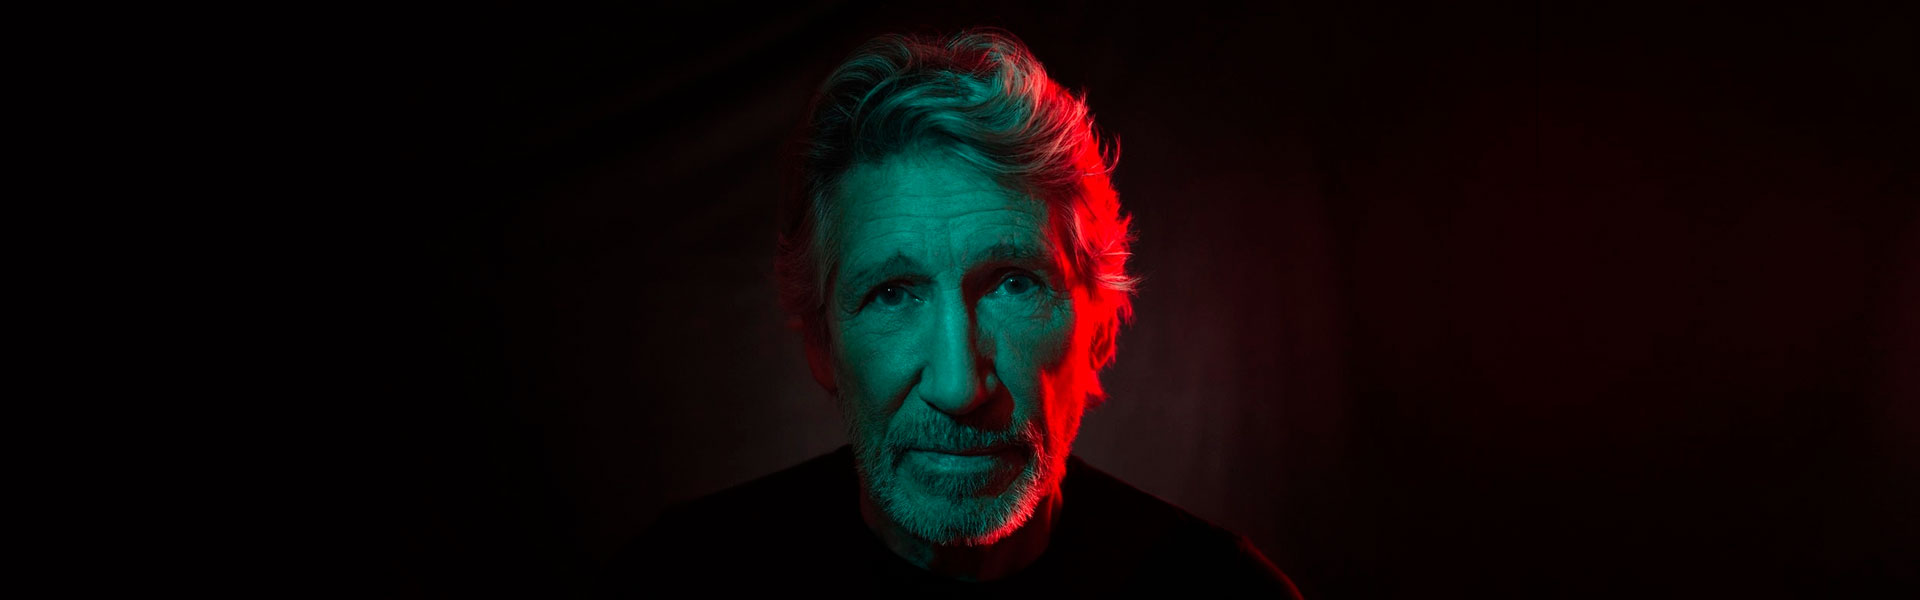 Show do Roger Waters em Curitiba